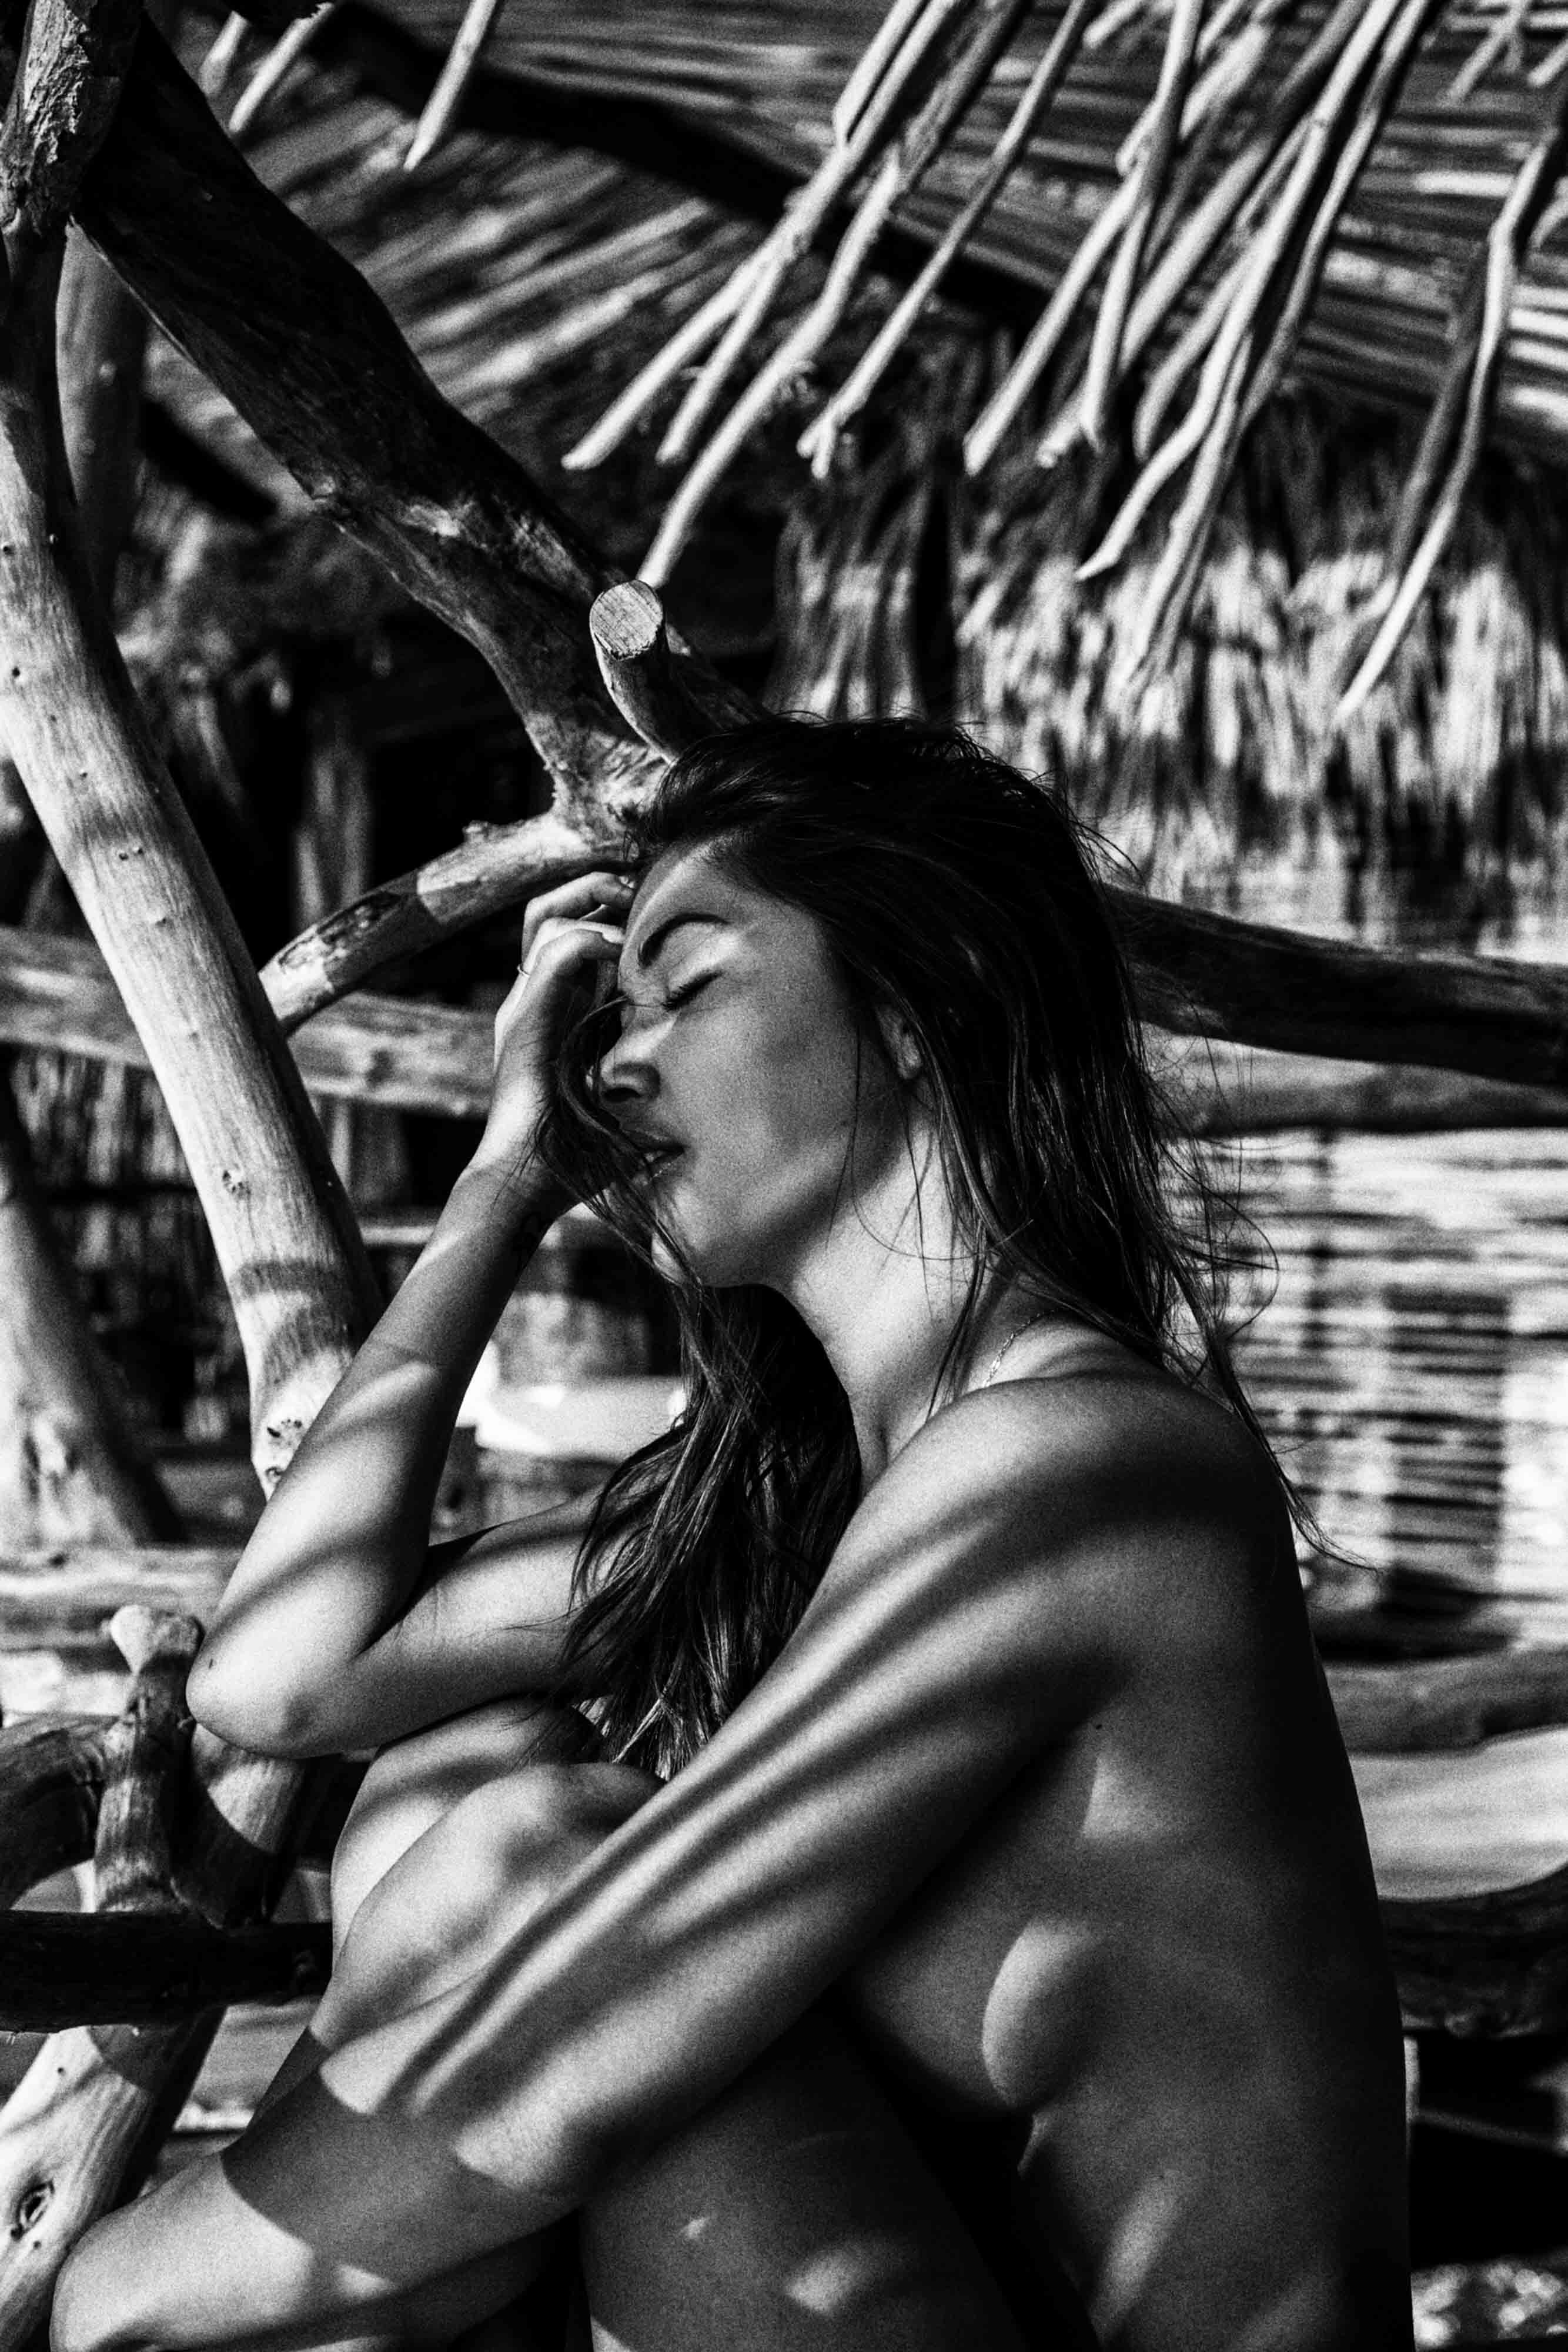 Arianny Celeste nude in TULUM MEXICO - Badboi photo shoot 20x UHQ photos 10.jpg